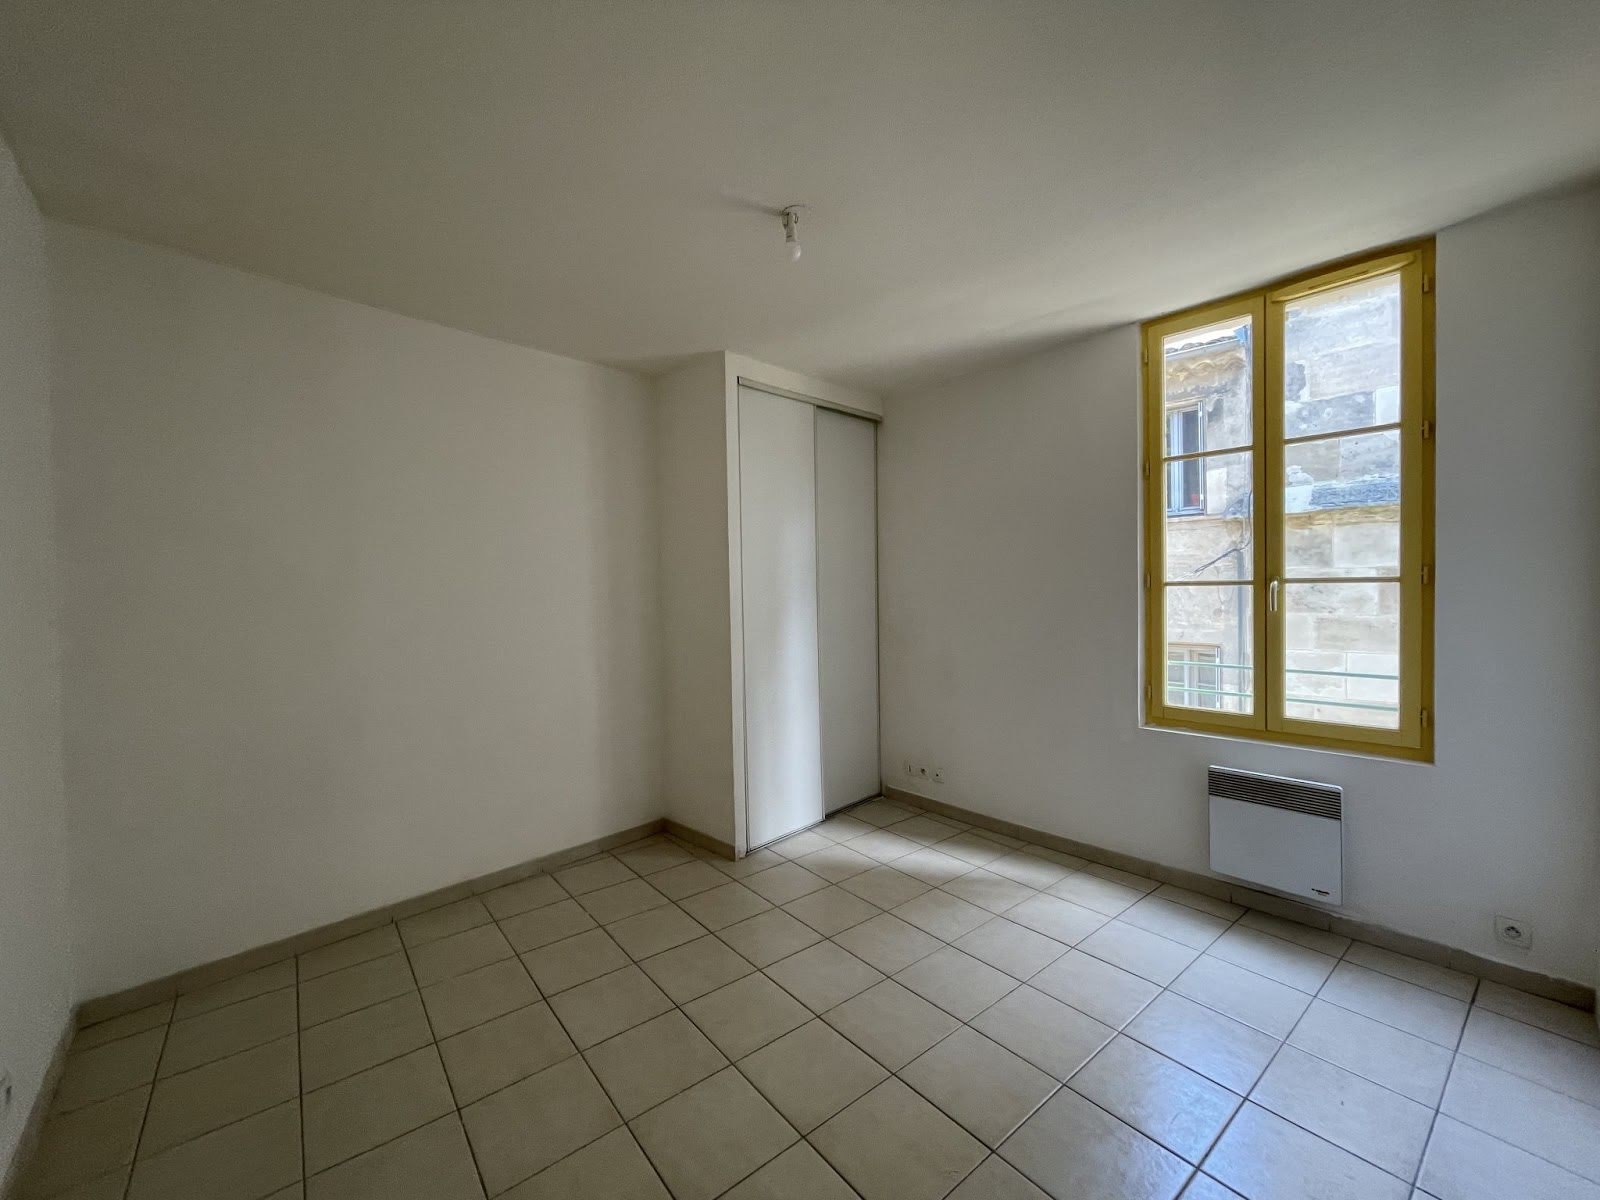 Location appartement 3 pièces 53,71 m2